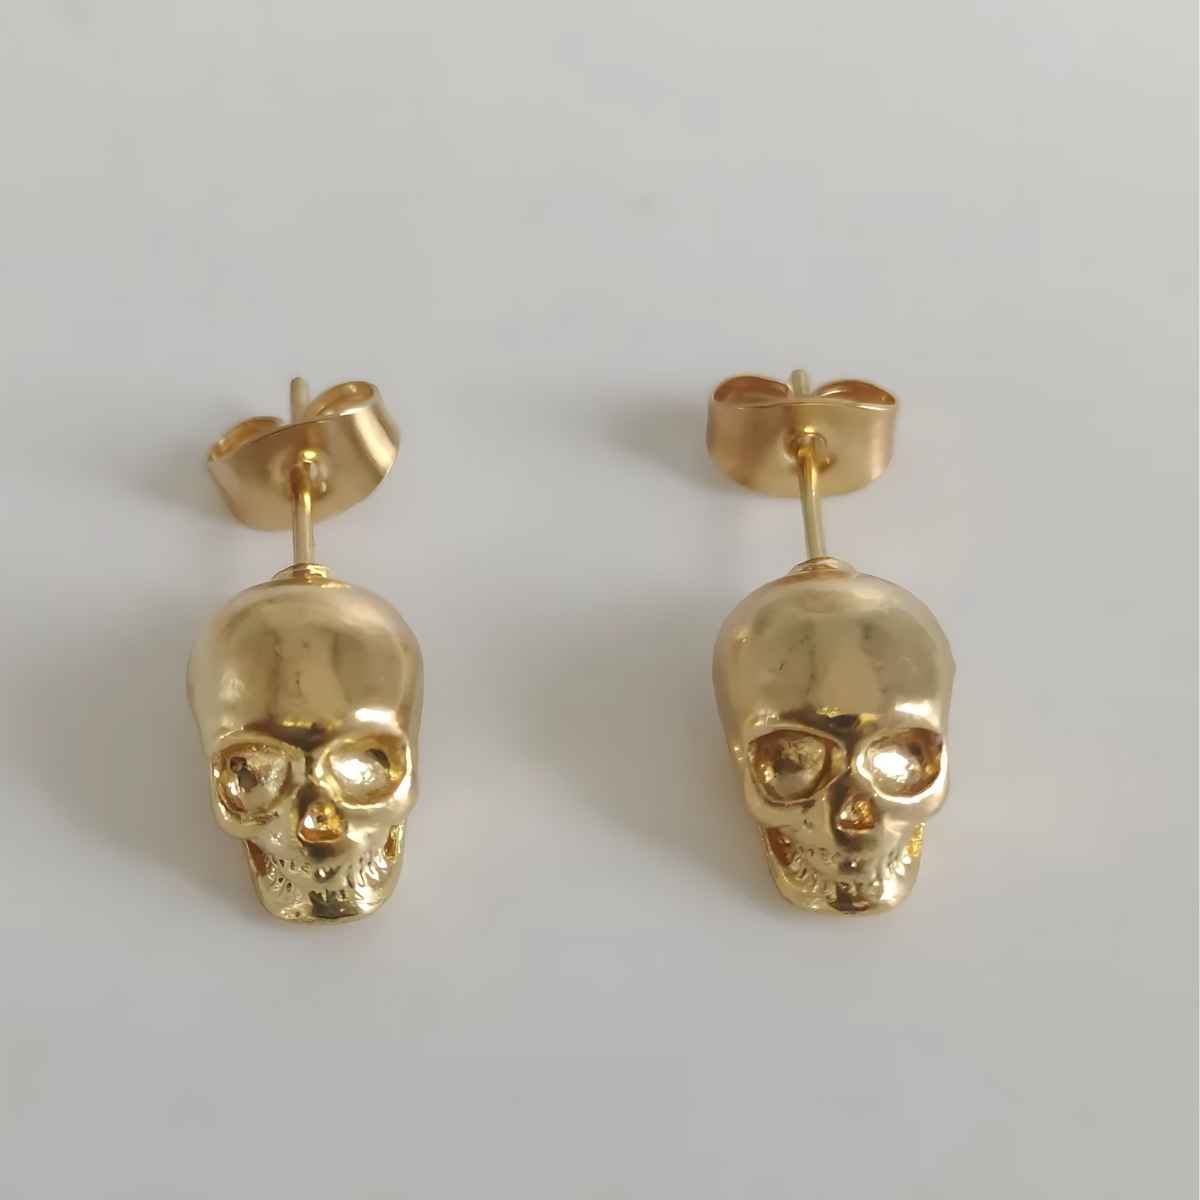 Stainless Steel Skull Stud Earrings Gold